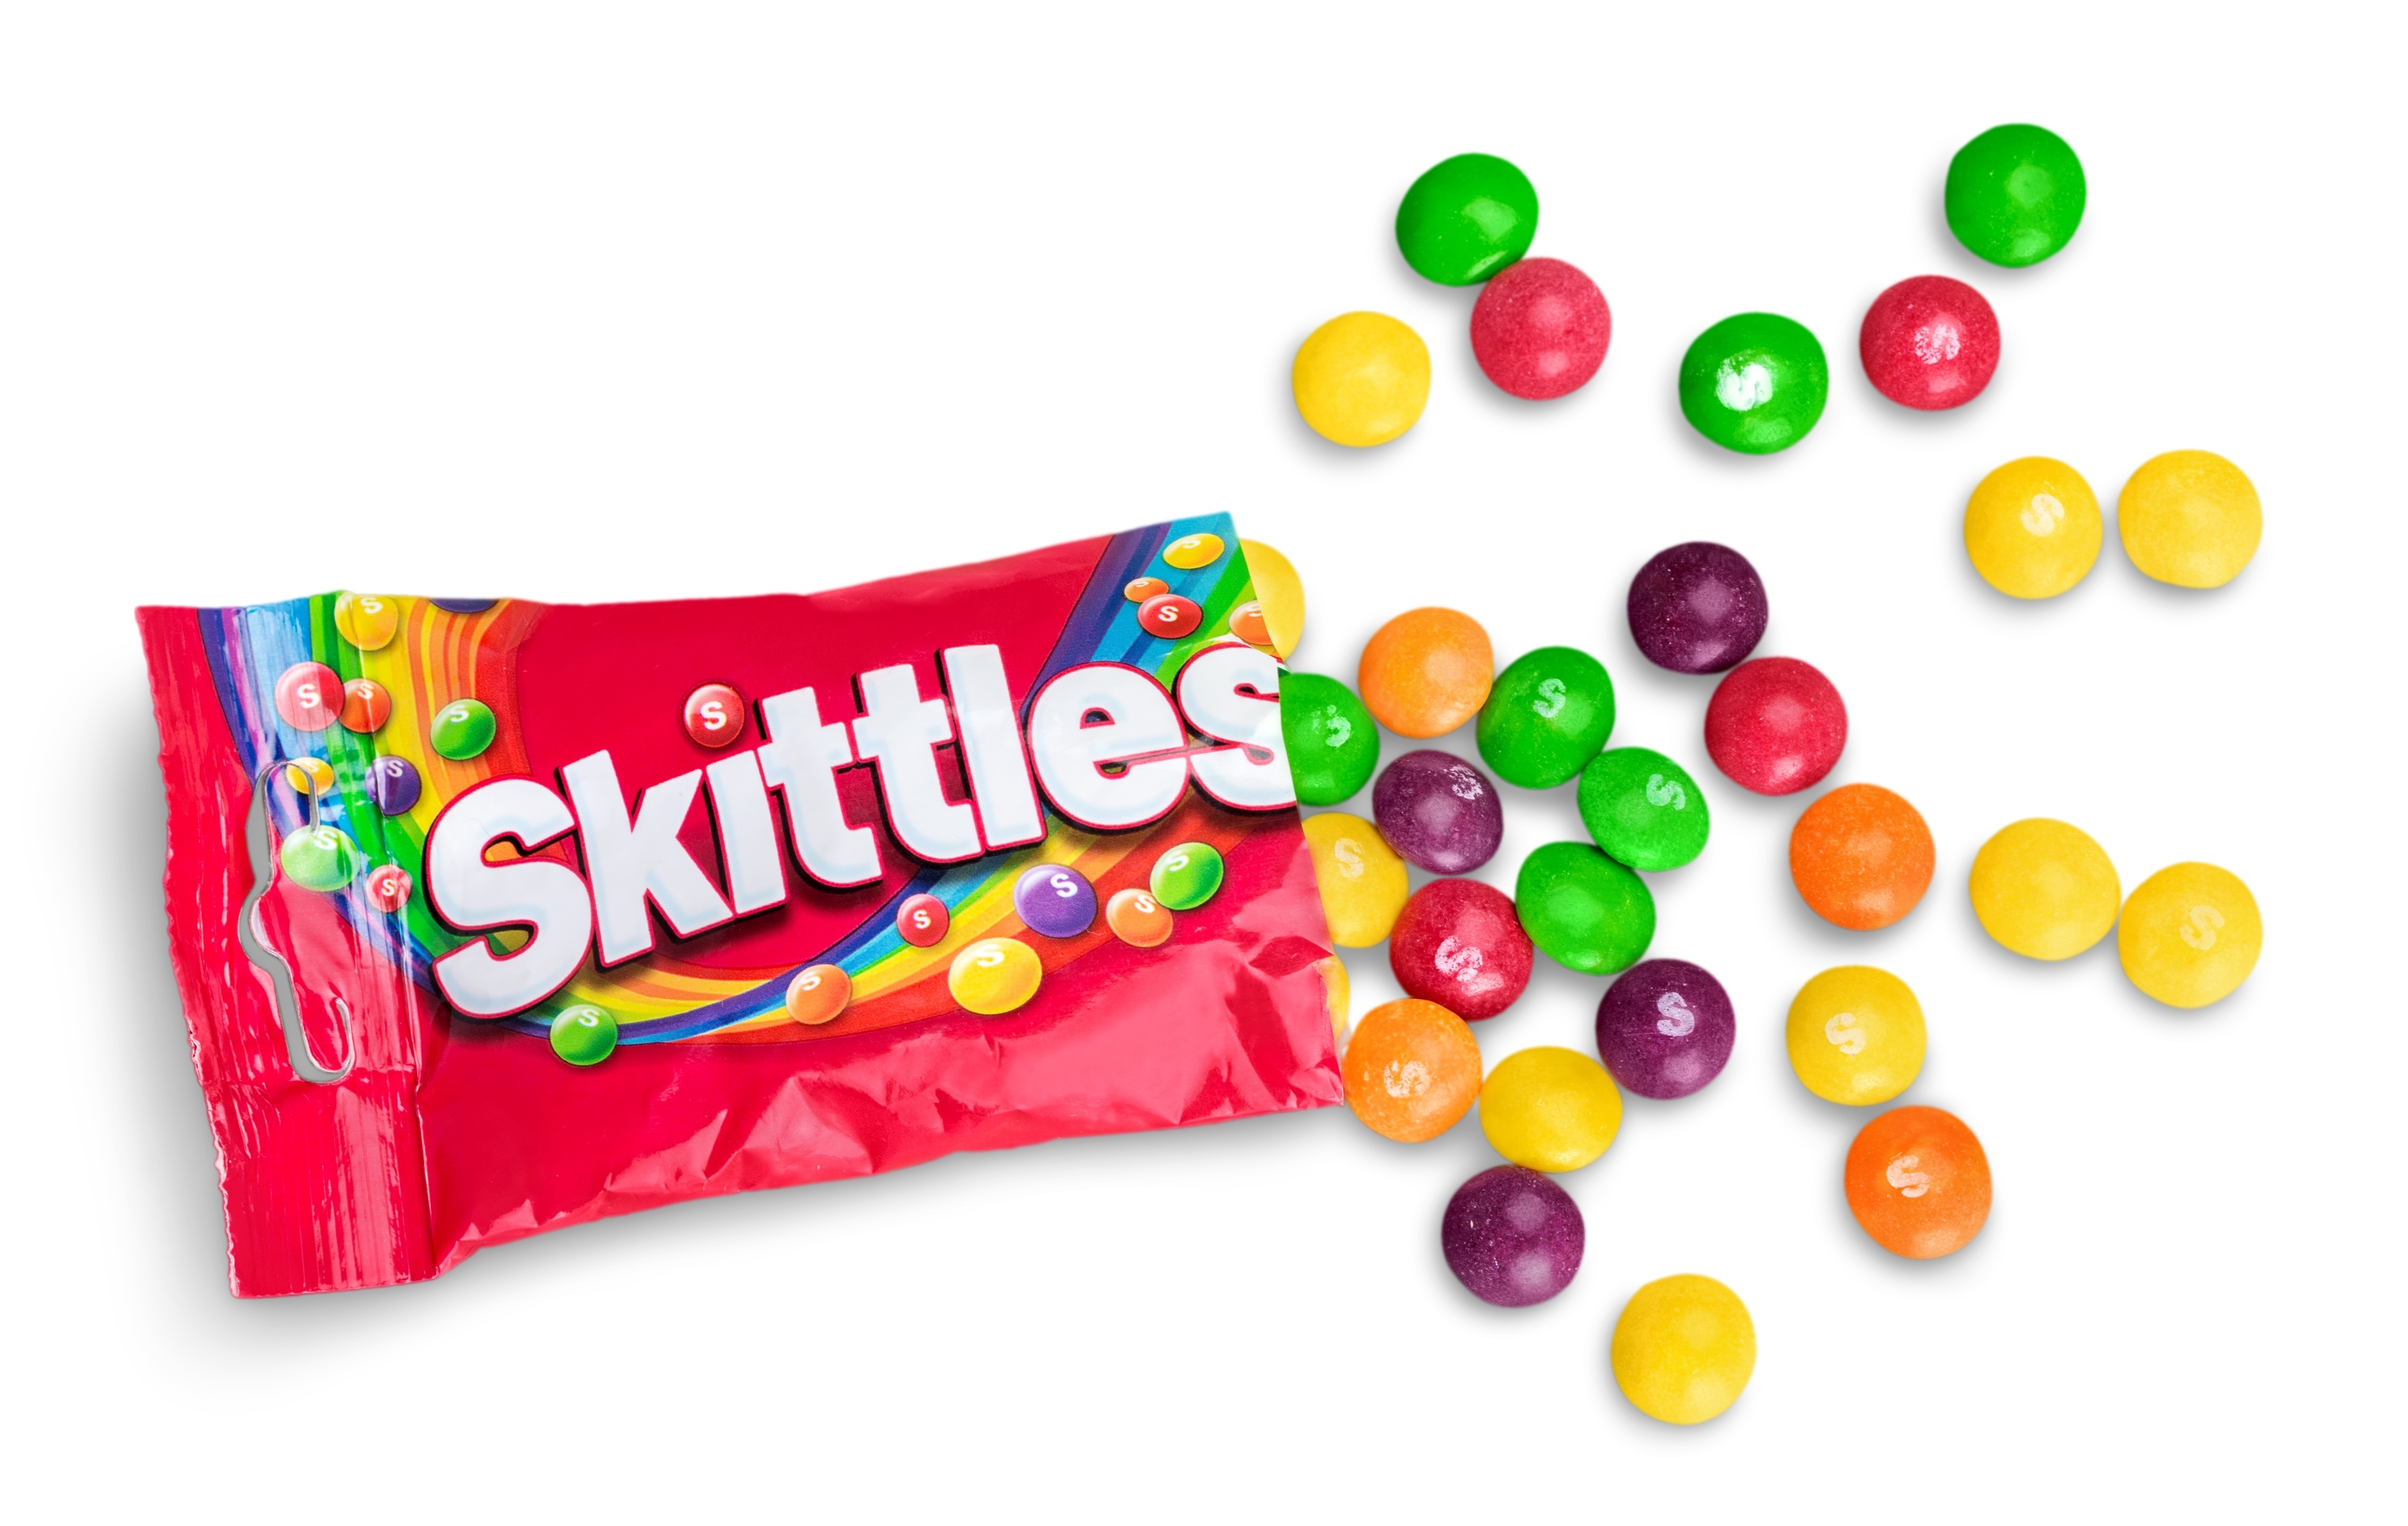 Oriģinālajām «Skittles»  konfektēm ir piecas dažādas augļu garšas un krāsas. Kura no šī nav «Skittles»  garša?